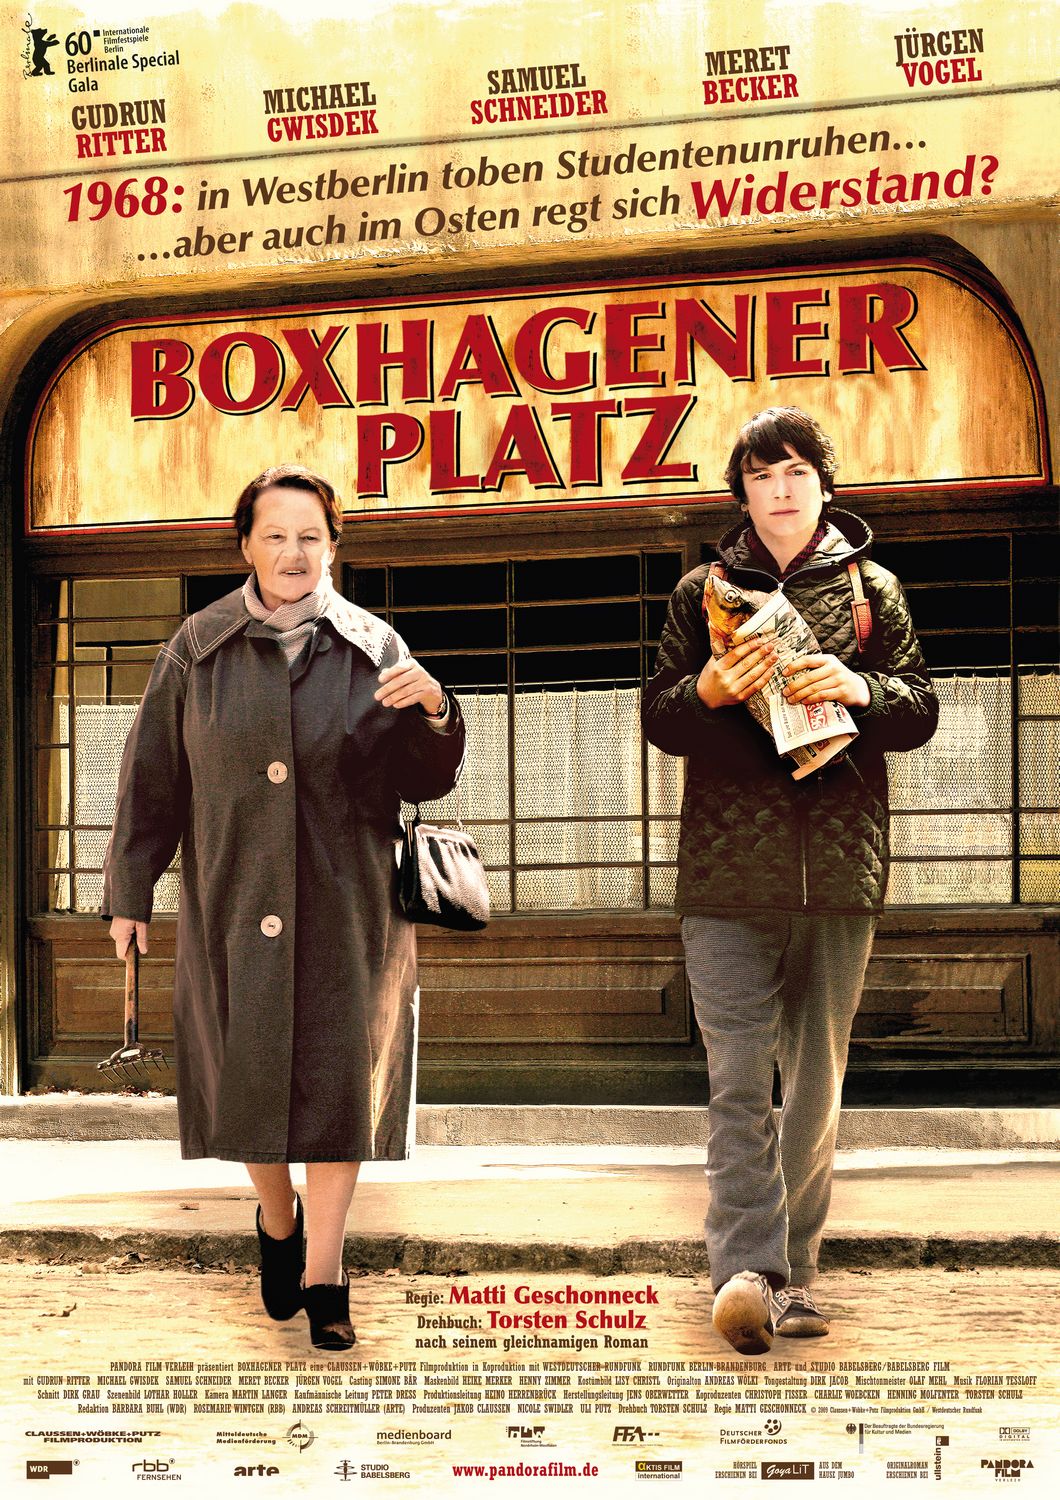 Extra Large Movie Poster Image for Boxhagener Platz 